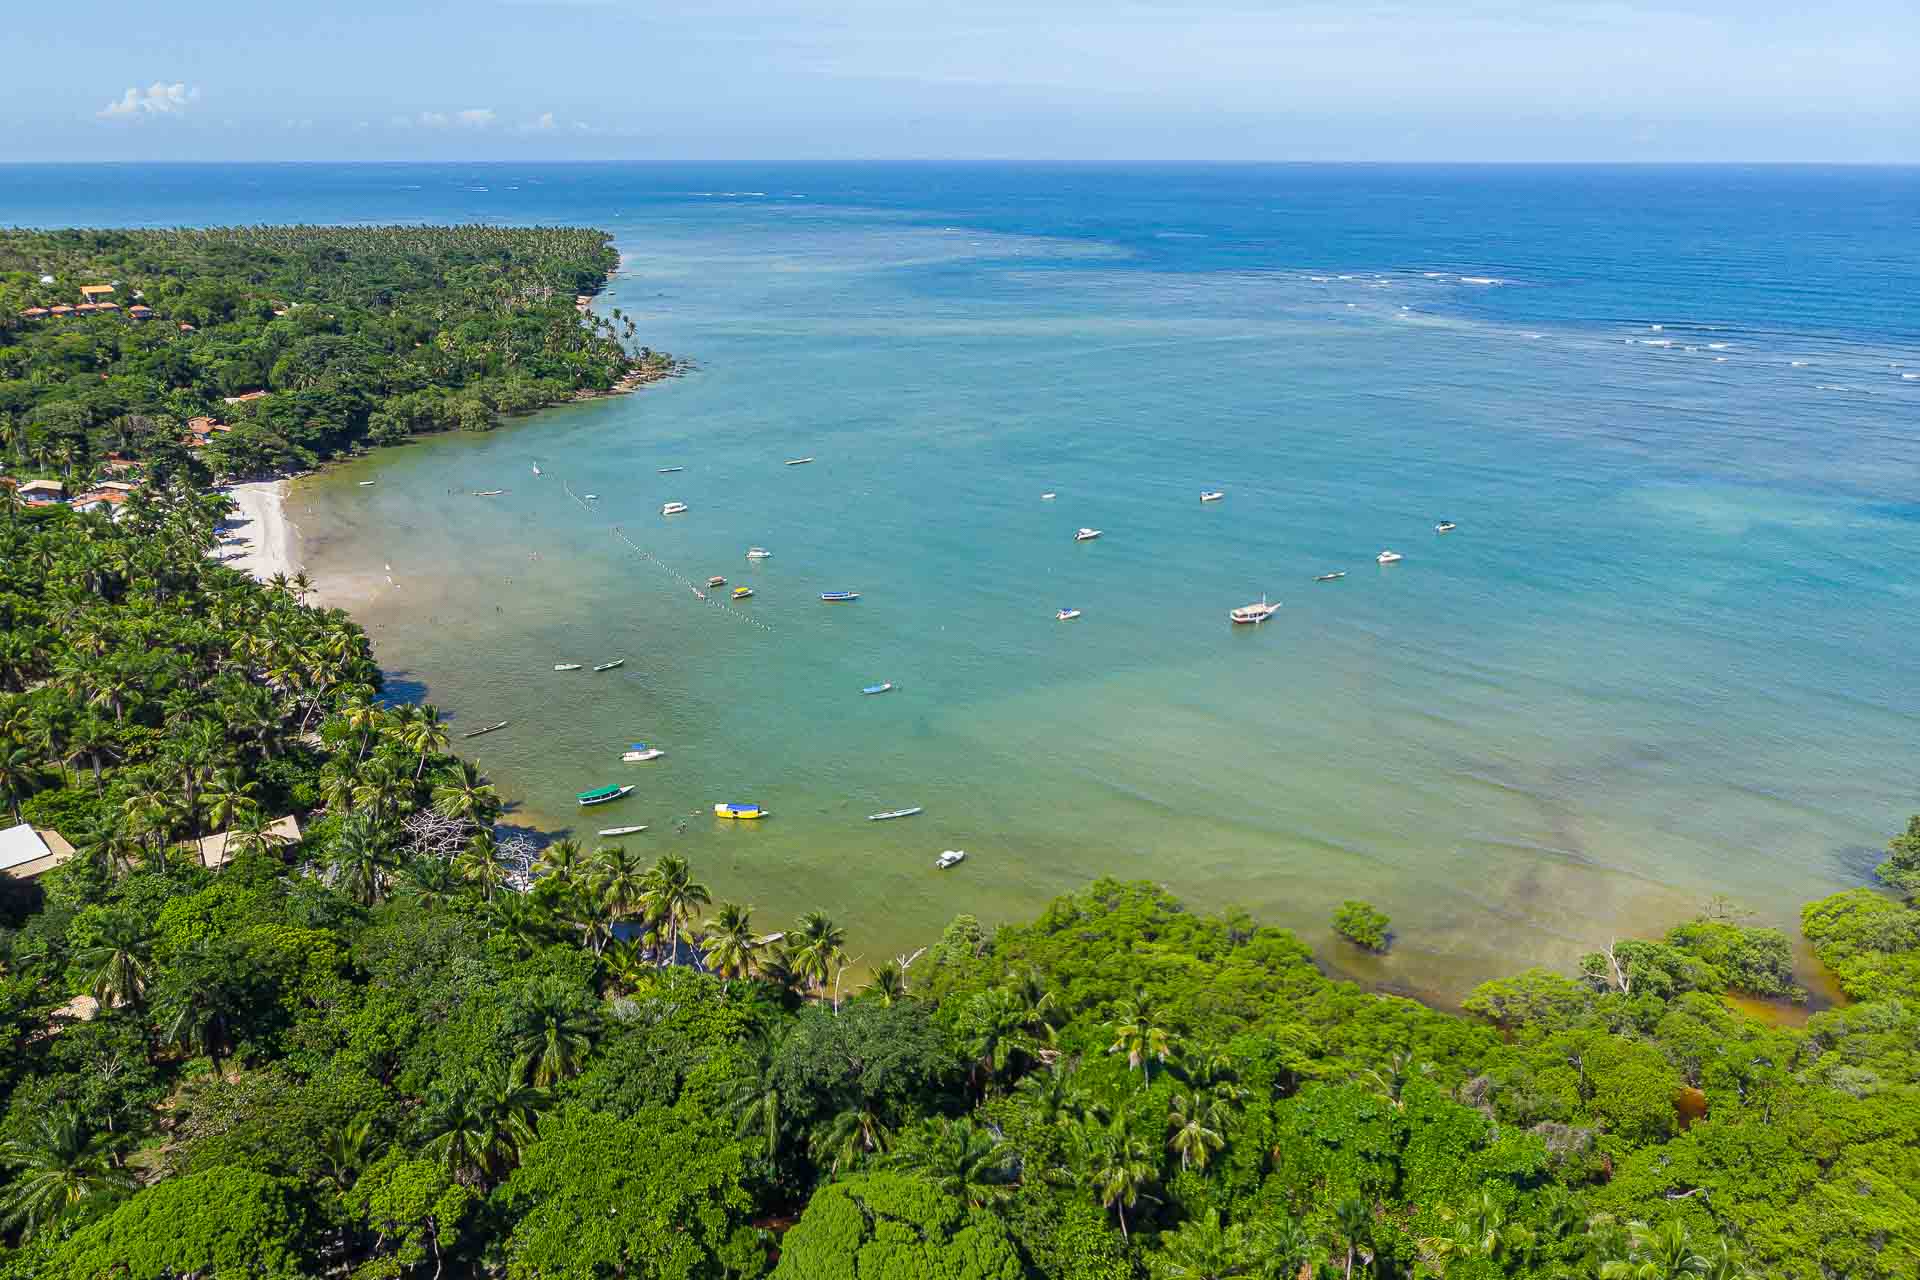 Vista aerea da praia de Morere mostrando a vila e o mar de Boipeba